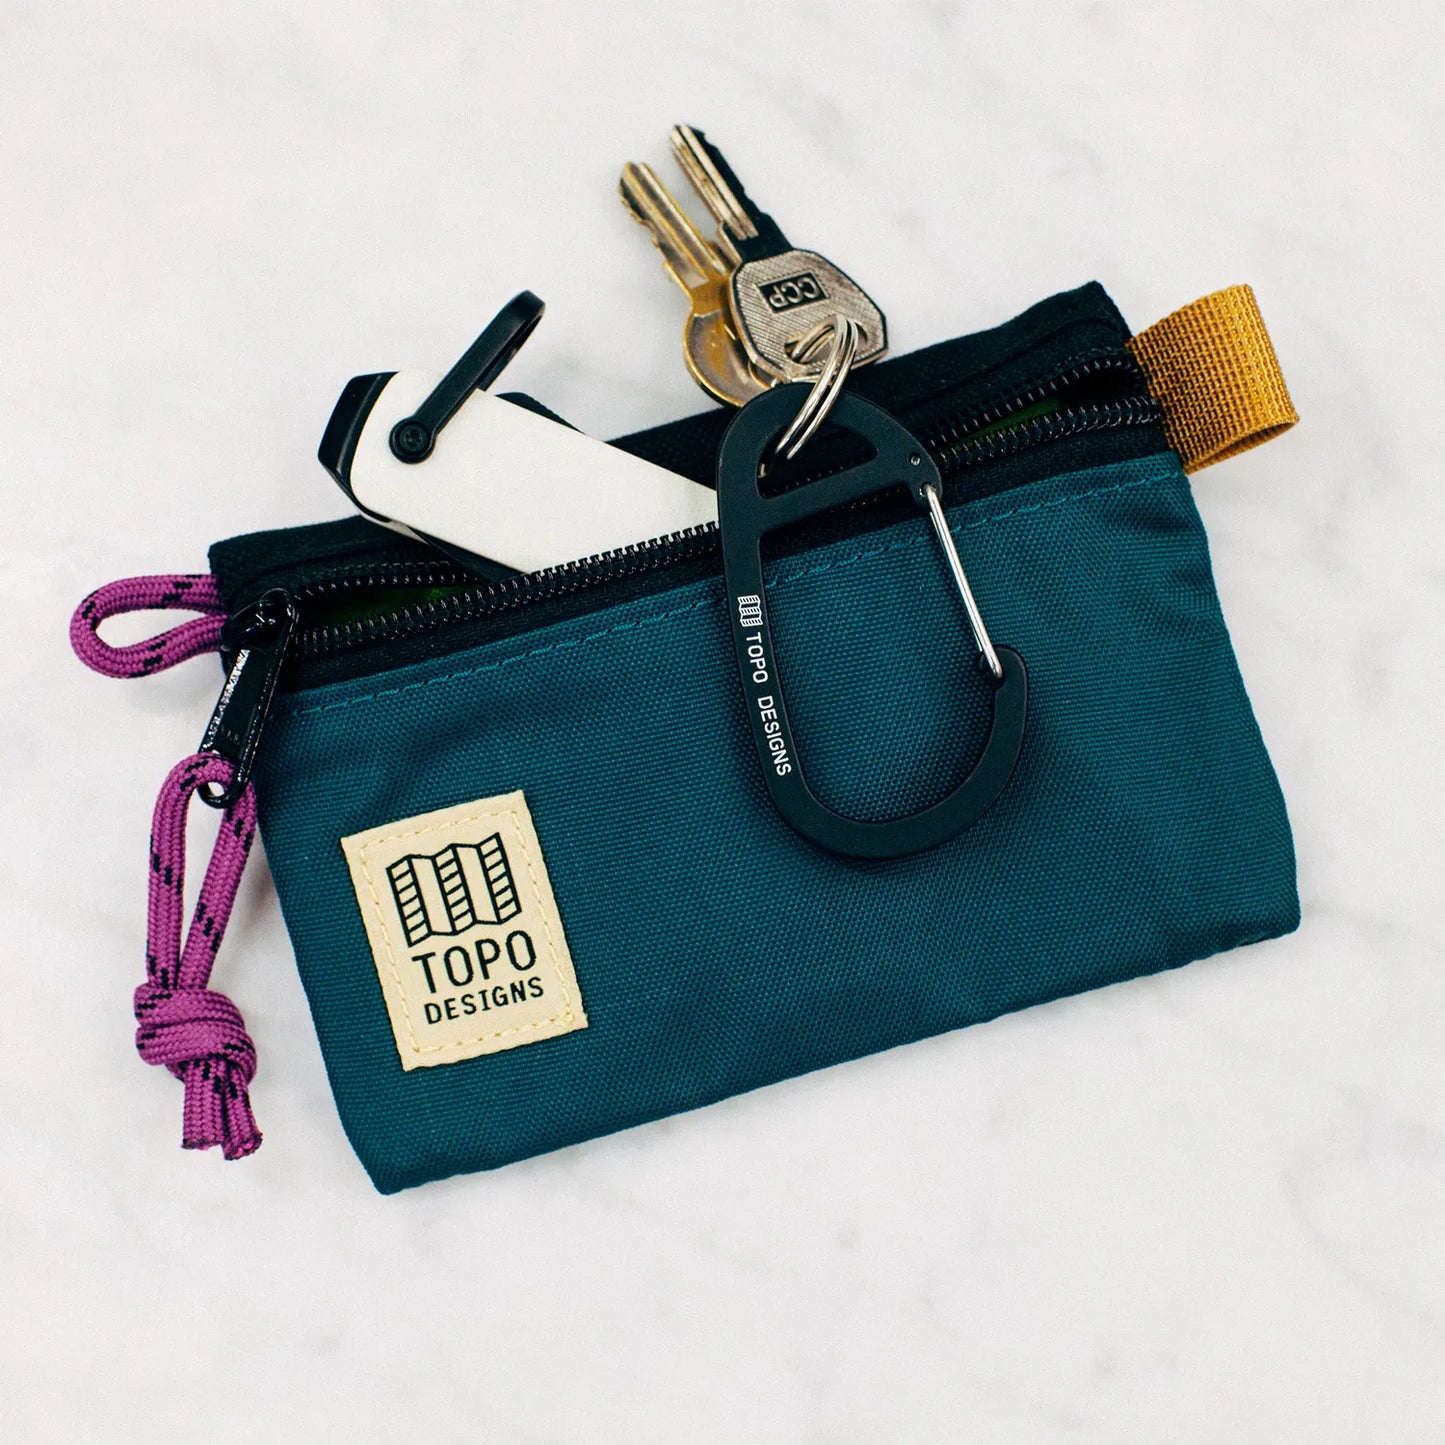 Accessory Bag Pouch - Topo Designs